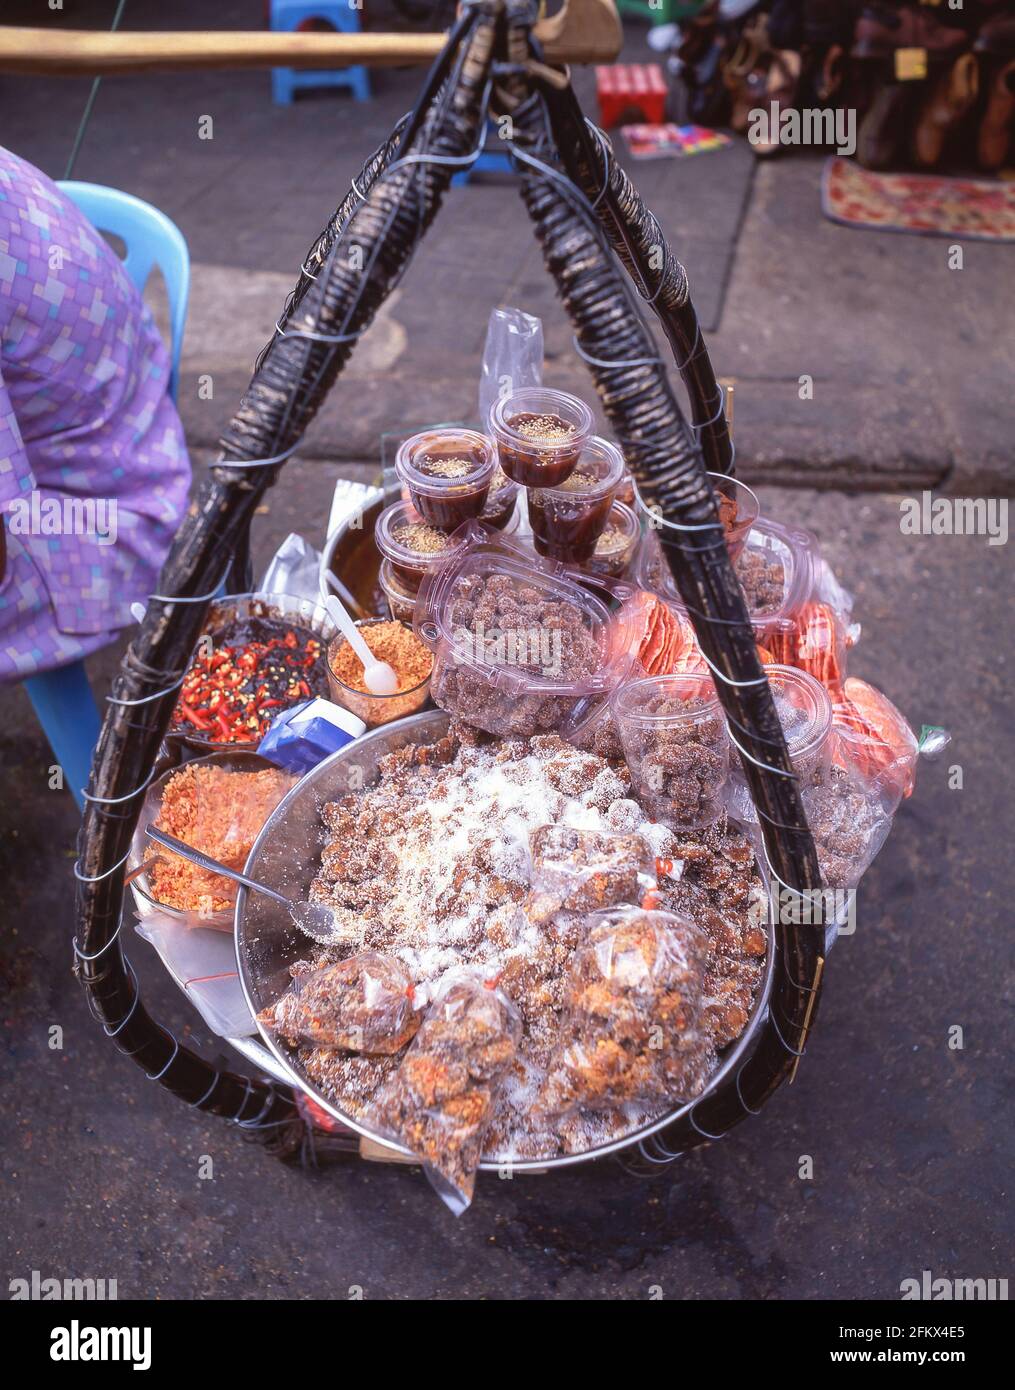 Panier alimentaire de Seller, marché Bình Tây, Cholon, District 6, Ho Chi Minh ville (Saigon), République socialiste du Vietnam Banque D'Images